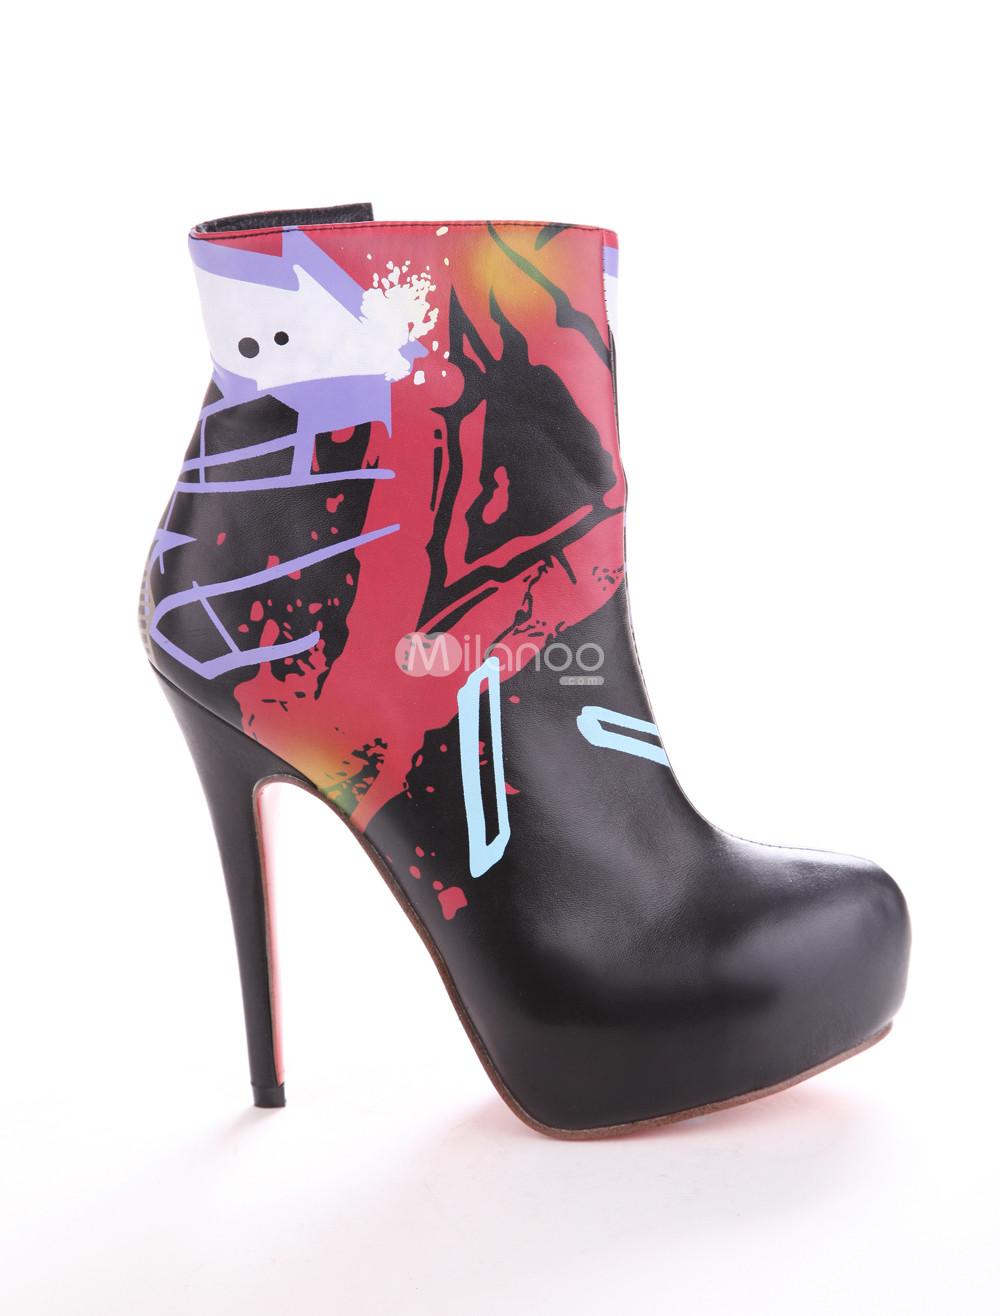 Foto Cremallera pintado negro señaló botines de tacón de mujer de microfibra de Toe